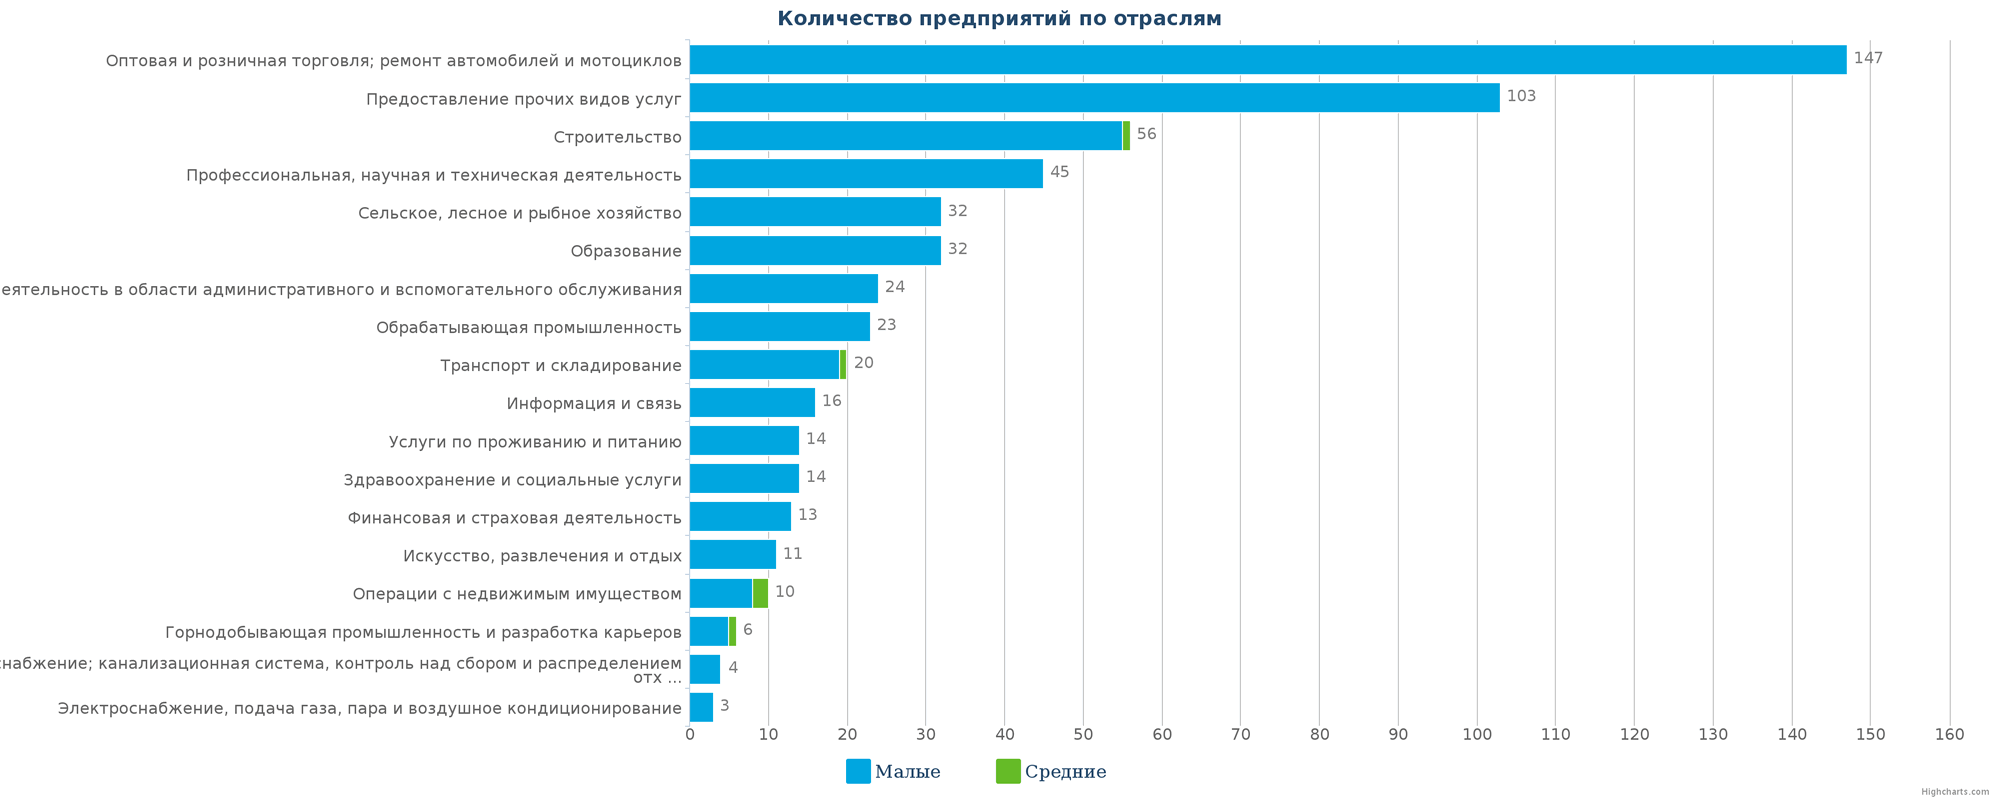 Новые компании в каталоге Казахстана